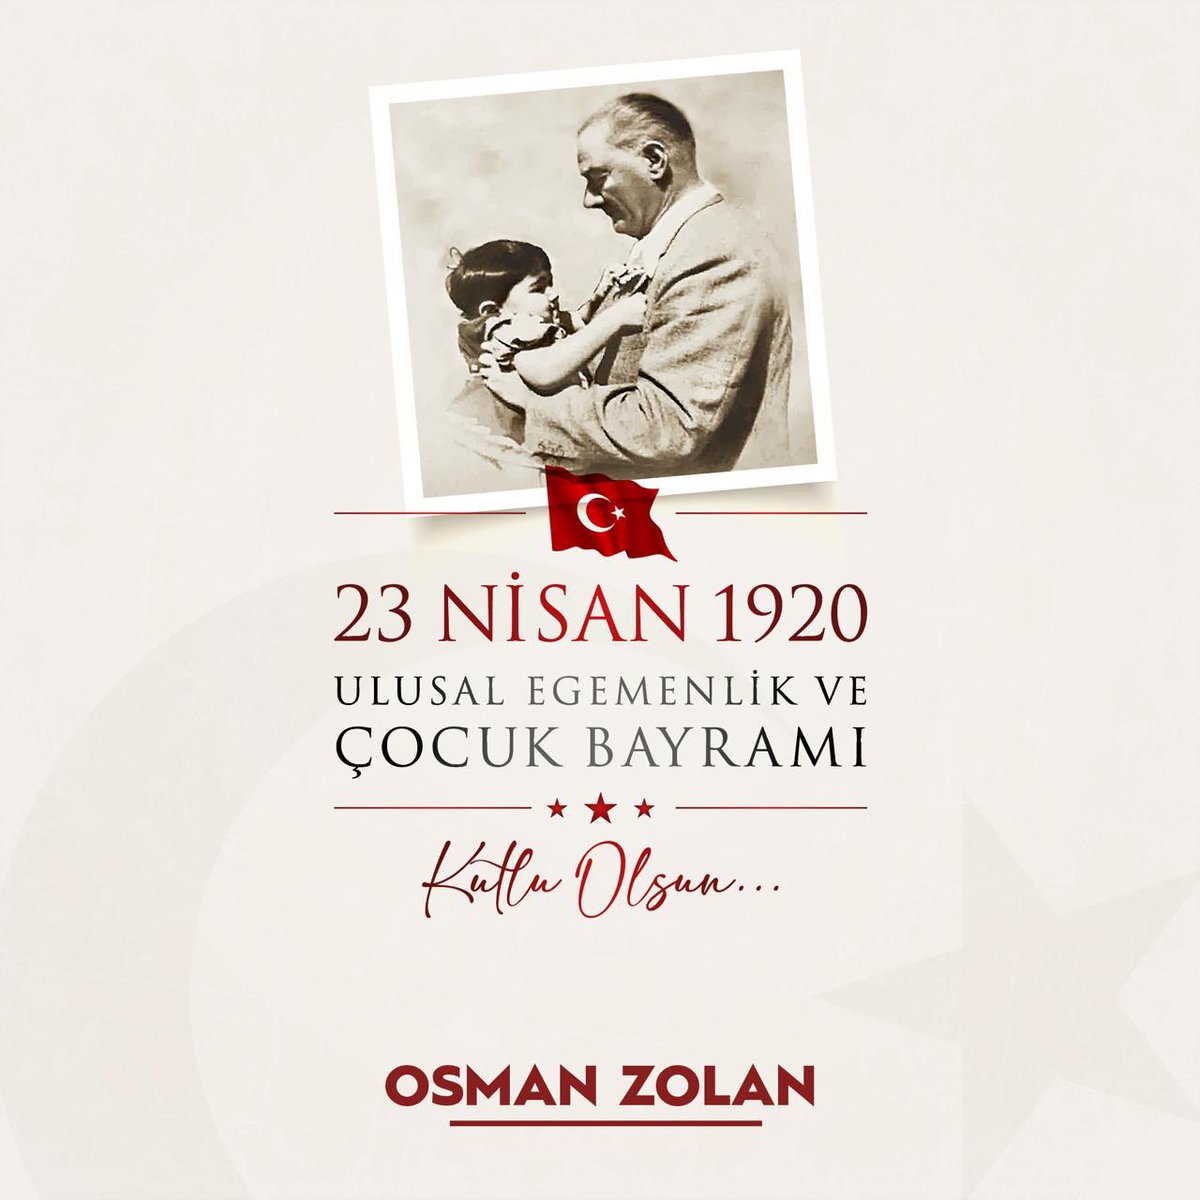 Gazi Meclisimizin 104. kuruluş yıldönümünü ve tüm dünya çocuklarının 23 Nisan Ulusal Egemenlik ve Çocuk Bayramı'nı tebrik ediyorum. Gazi Mustafa Kemal Atatürk başta olmak üzere tüm şehit ve gazilerimizi rahmetle, minnetle yad ediyorum. #23NisanKutluOlsun 🇹🇷